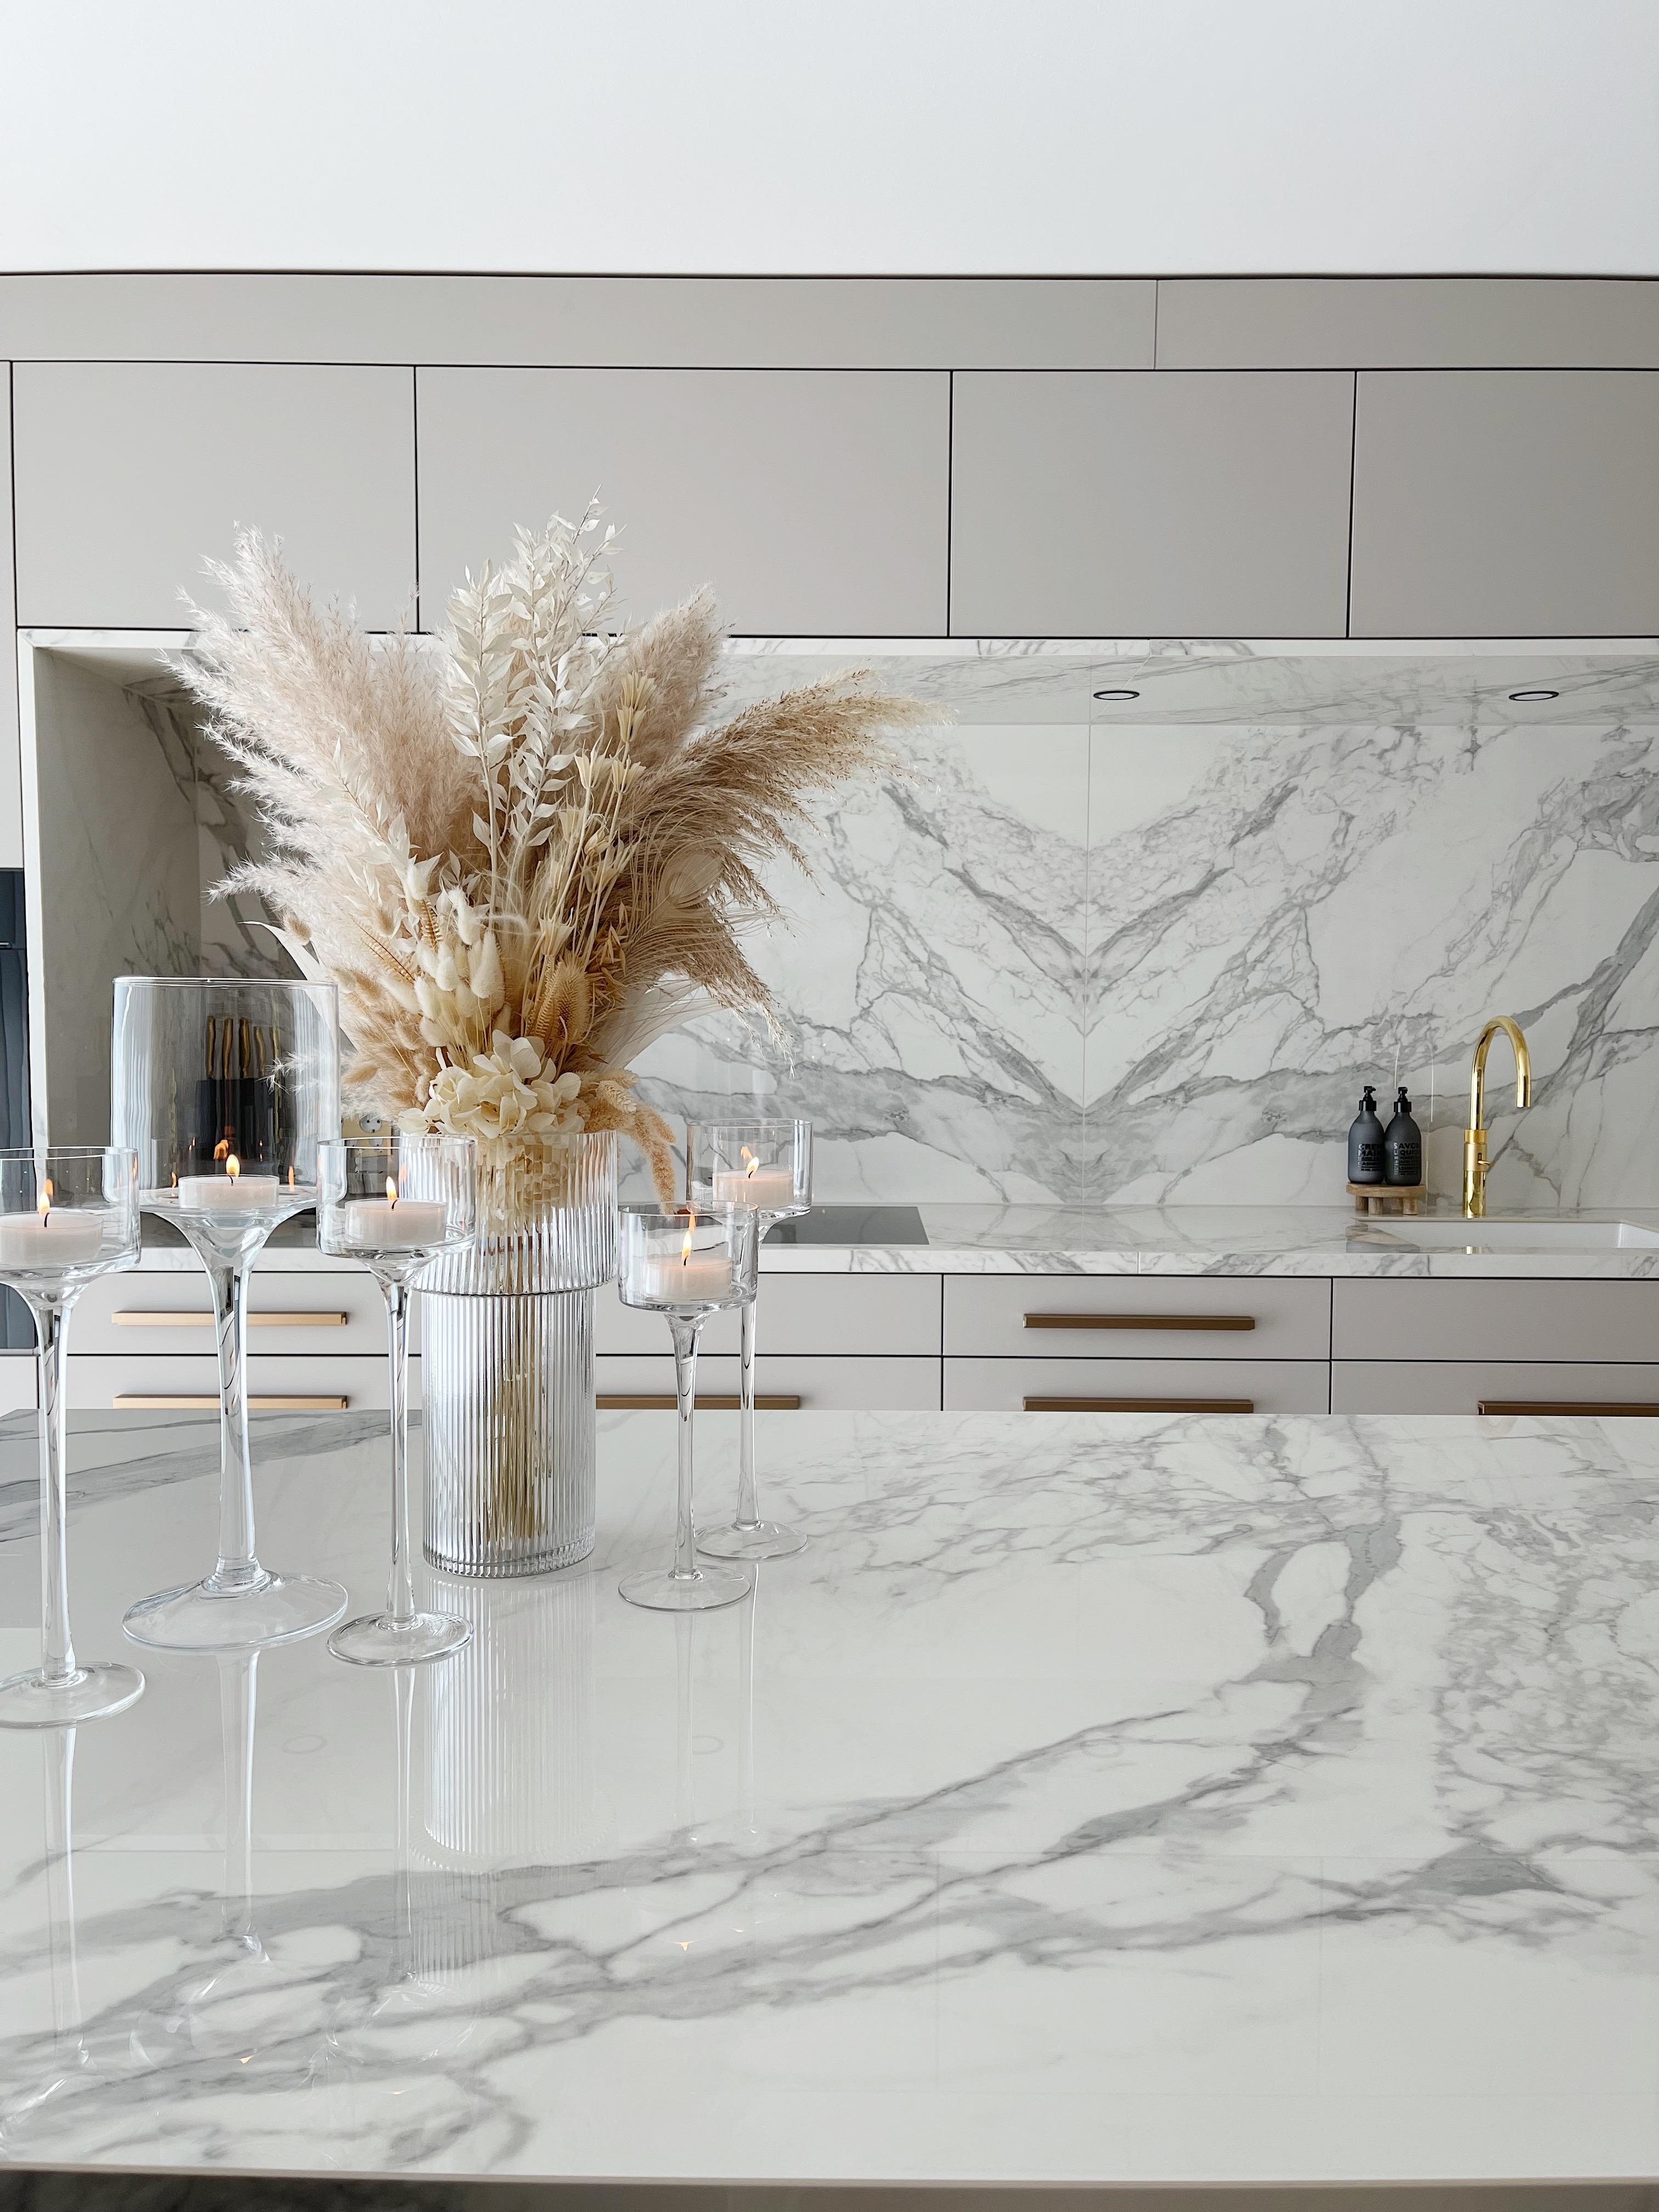 unsere Küche - freue mich jeden Tag sie zu sehen 🤪
#marblekitchen #marmorküche #kücheninsel